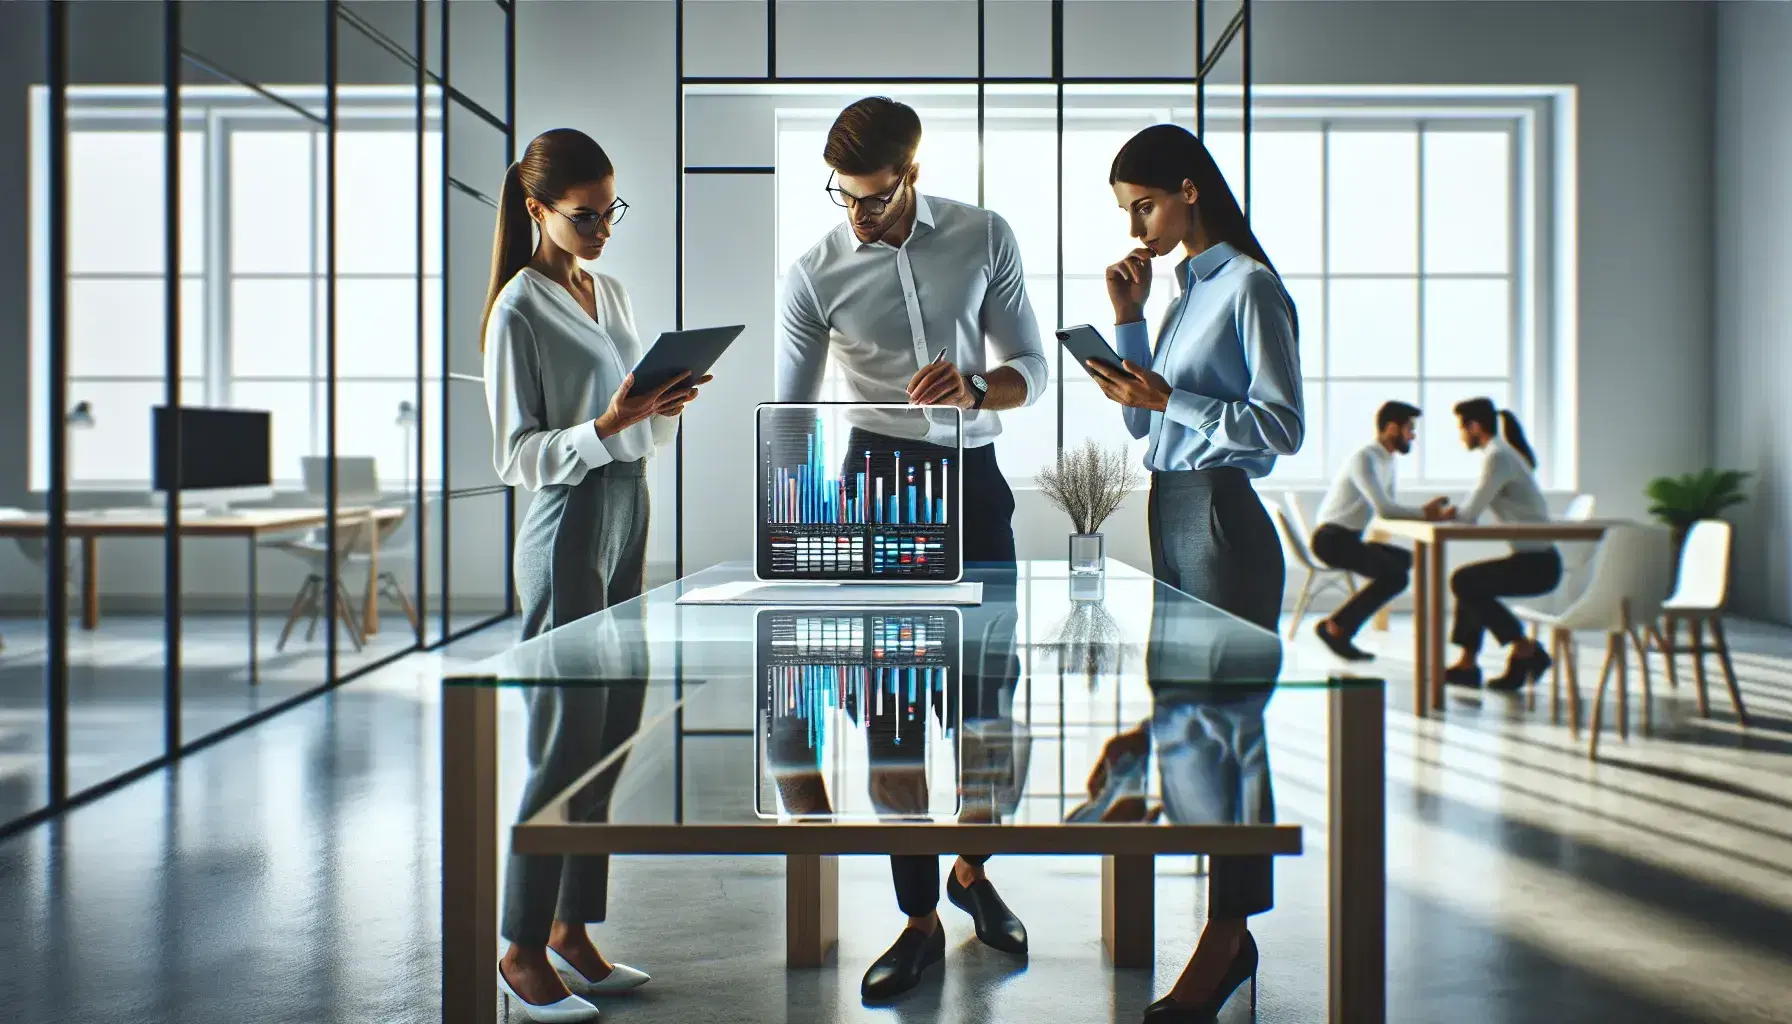 Tres profesionales analizan gráficos de barras en una tableta digital sobre una mesa de vidrio en una oficina iluminada, con dispositivos electrónicos y vestimenta formal.